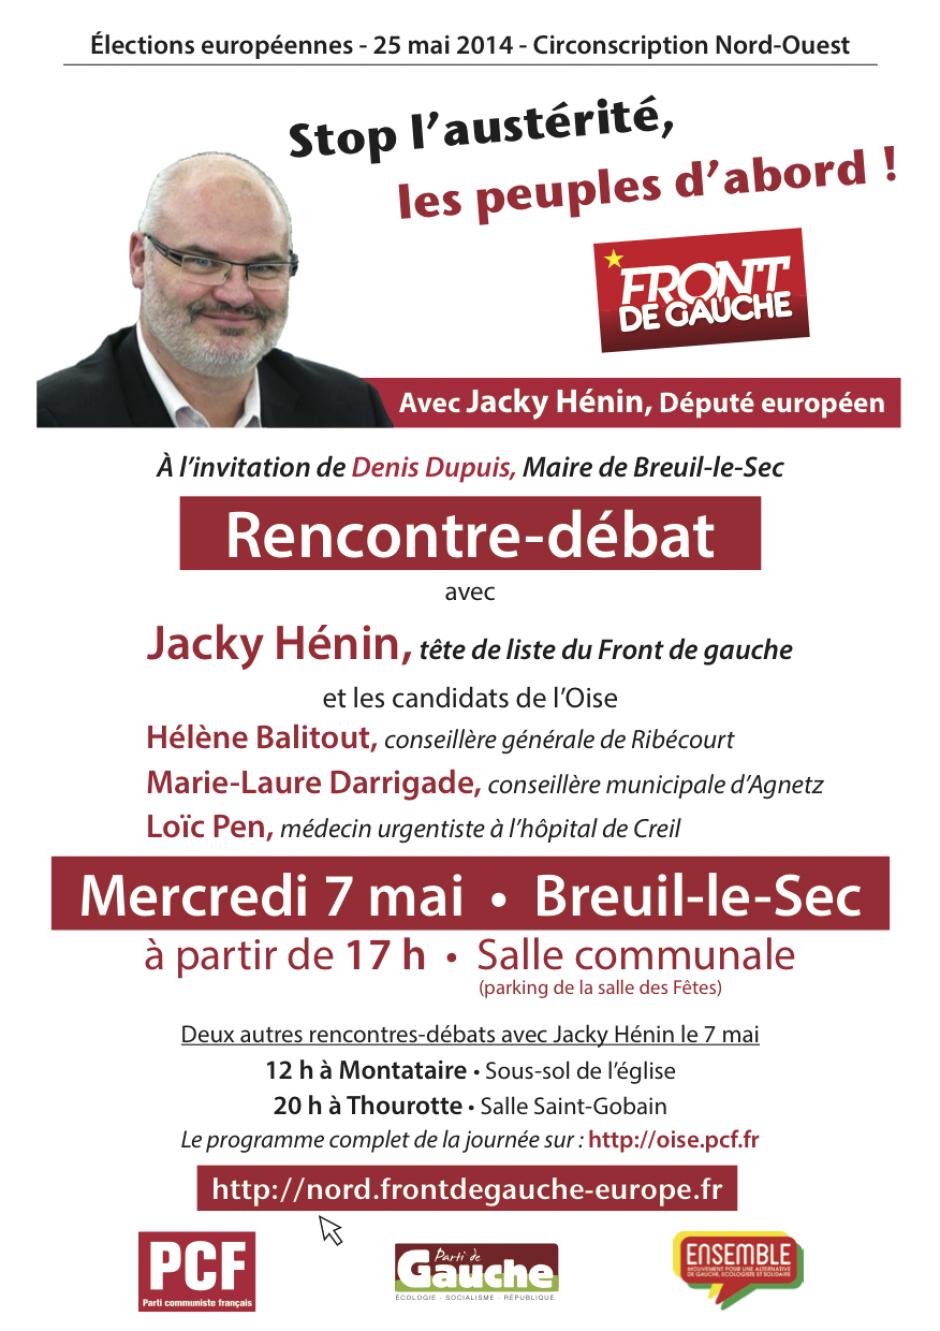 7 mai, Breuil-le-Sec - Rencontre-débat avec Jacky Hénin